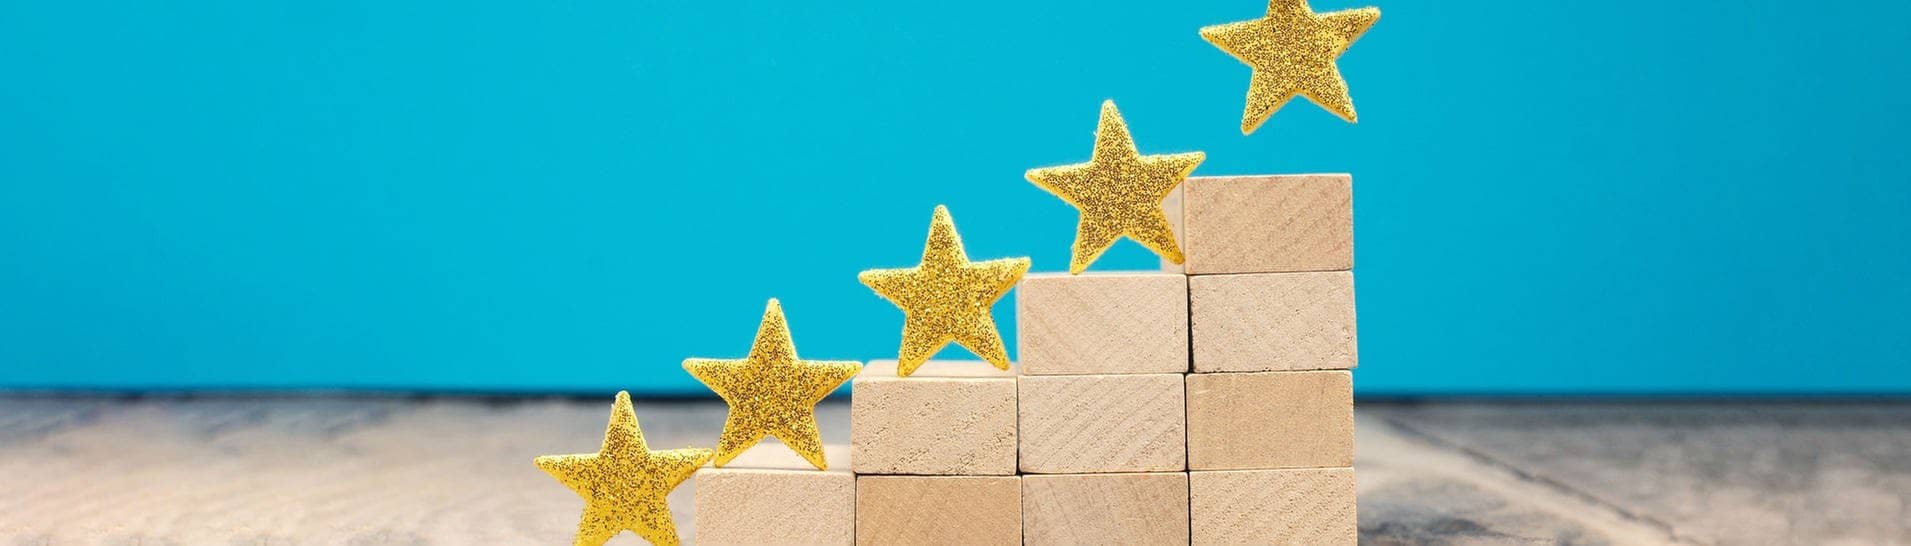 Goldene Sterne werden auf ein Podest aus Holzklötzen gestellt, damit Rezensionen dargestellt werden können. Wir kennen sie von Google-Bewertungen.